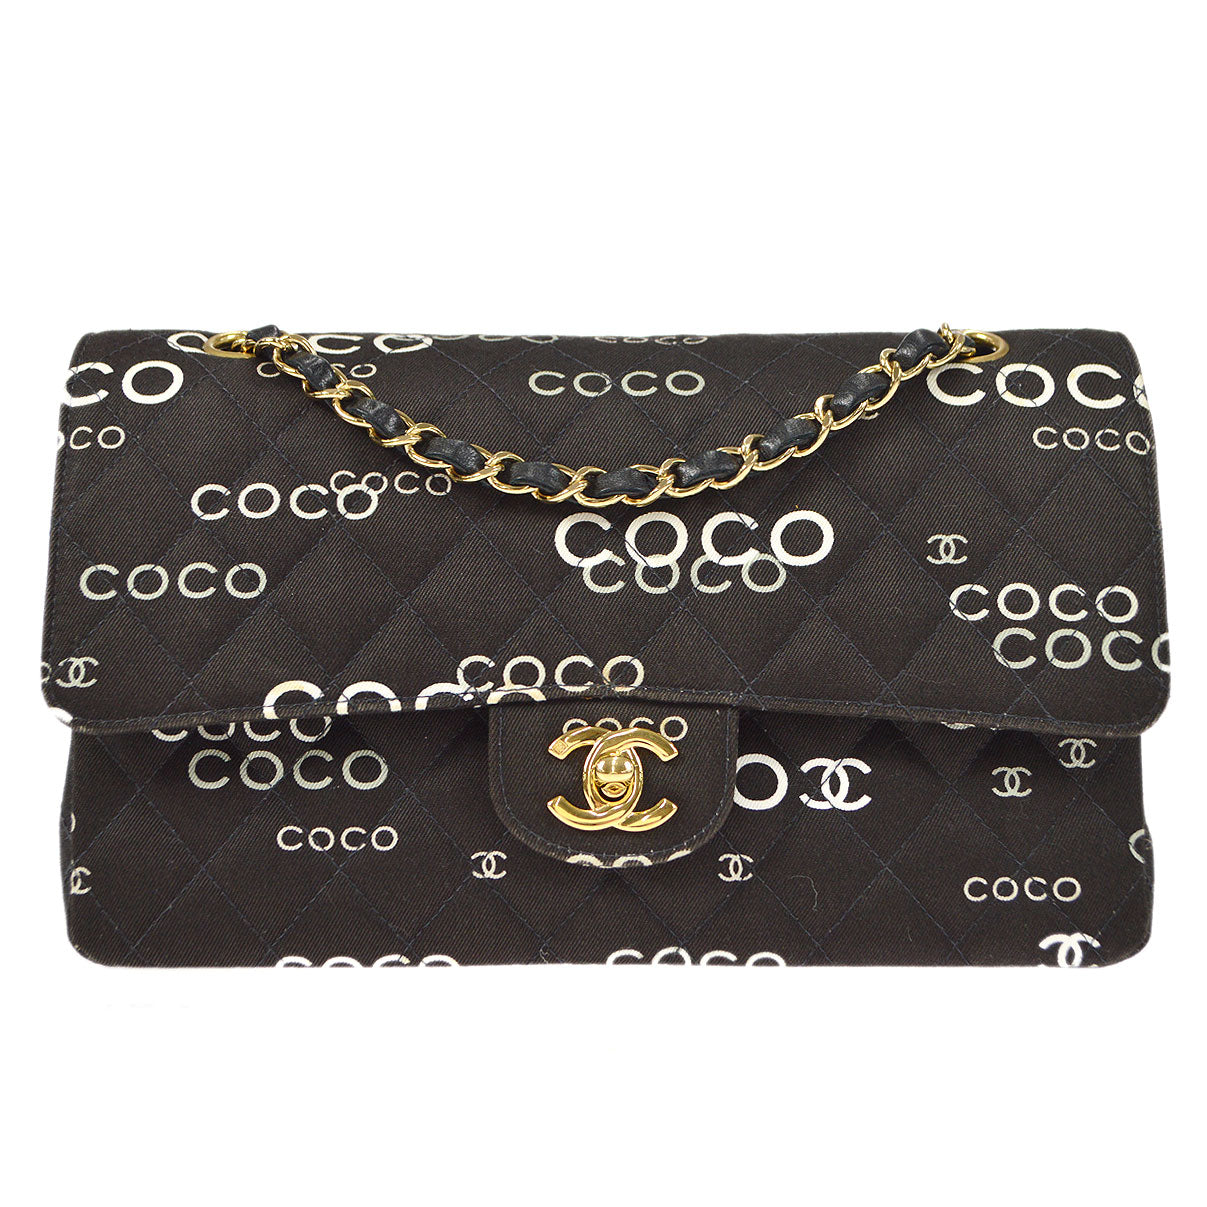 pink coco chanel handbags